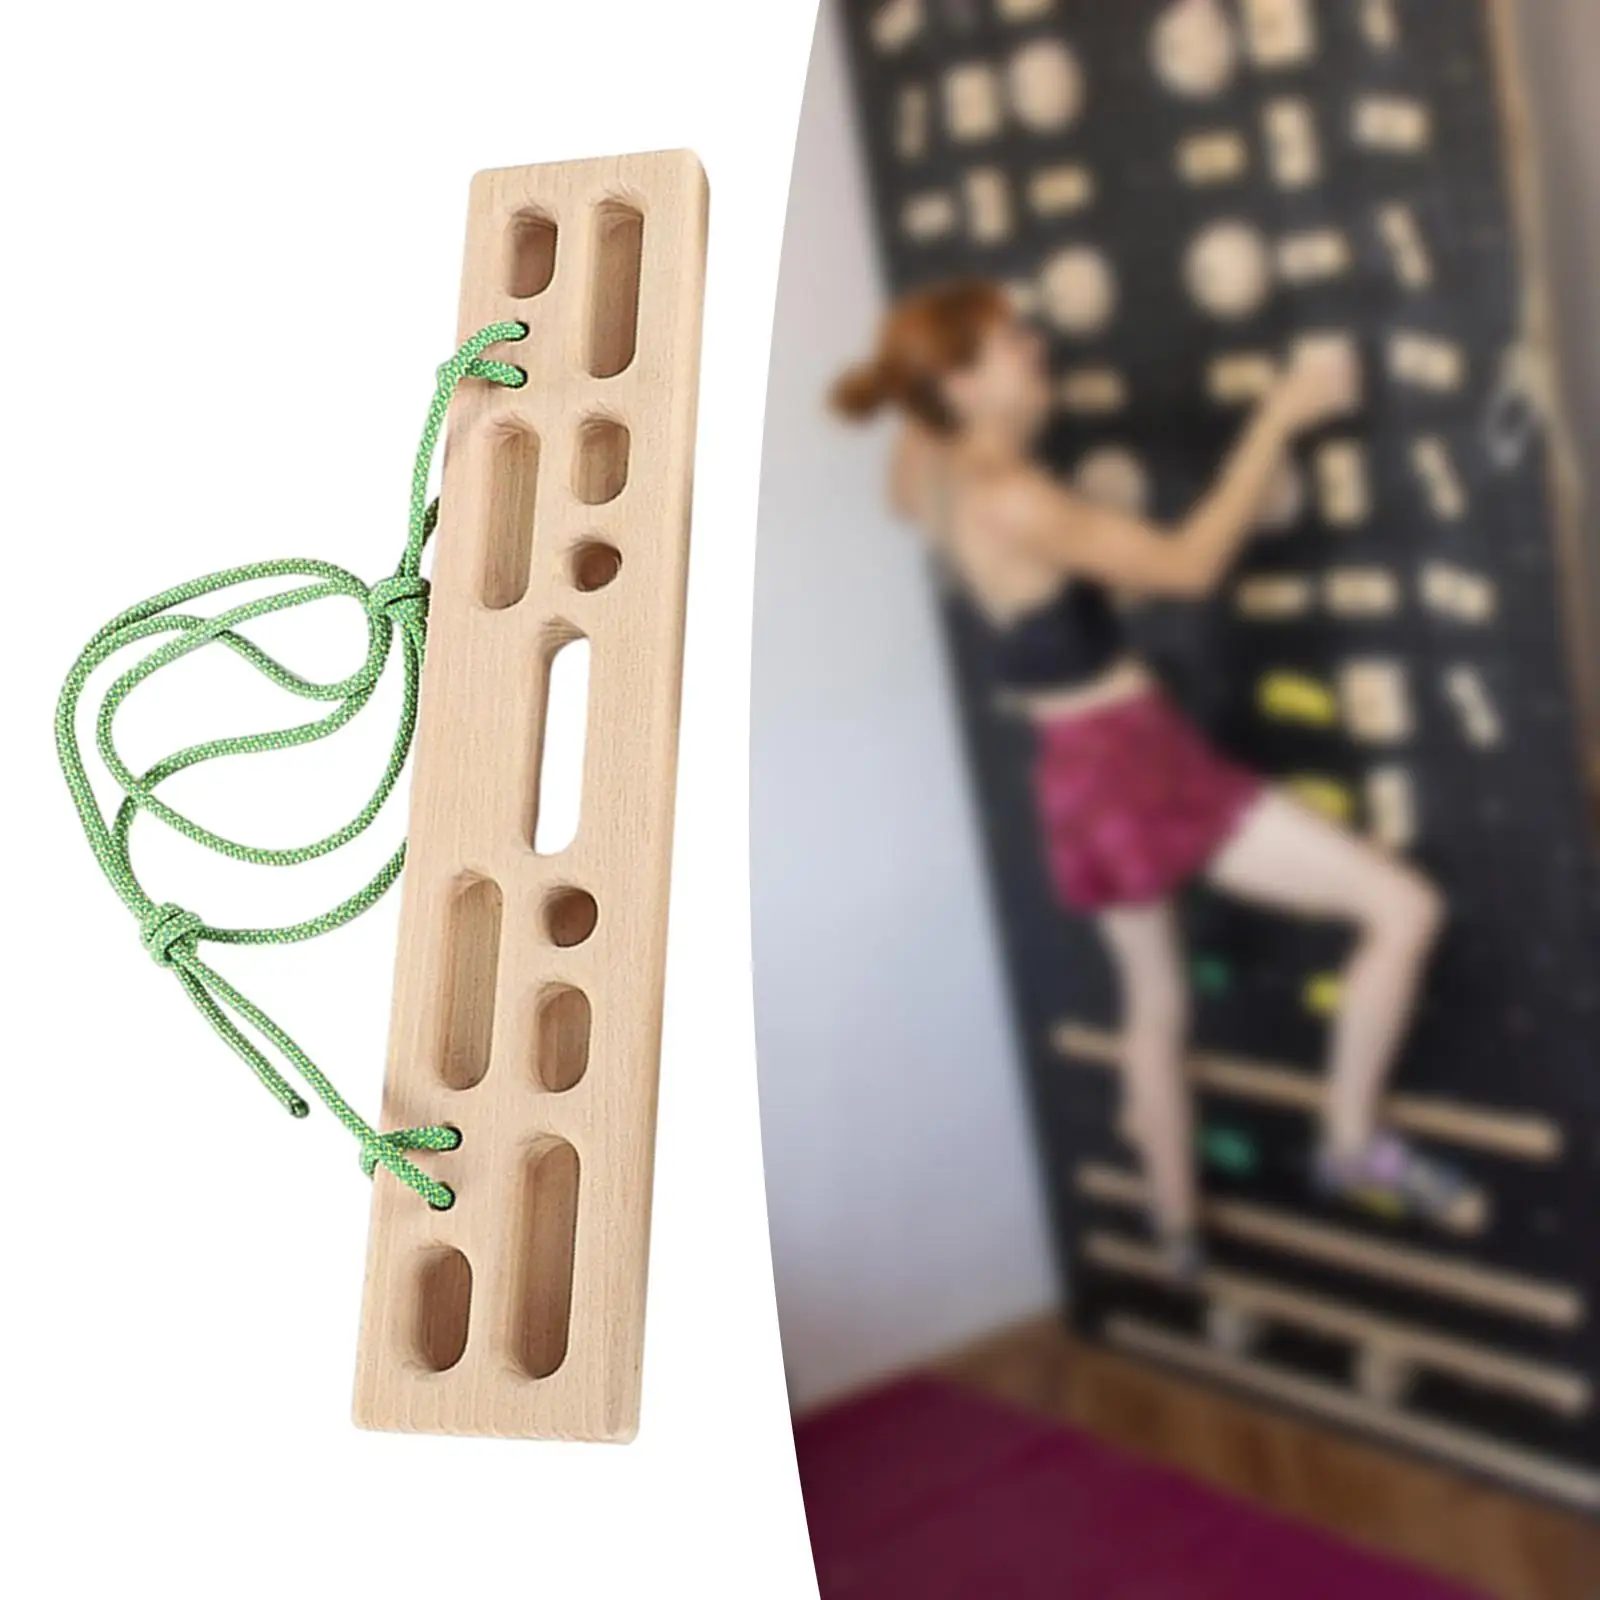 Climbing Hangboard Fingerboard Wooden Hang Board for Indoor Outdoor Home